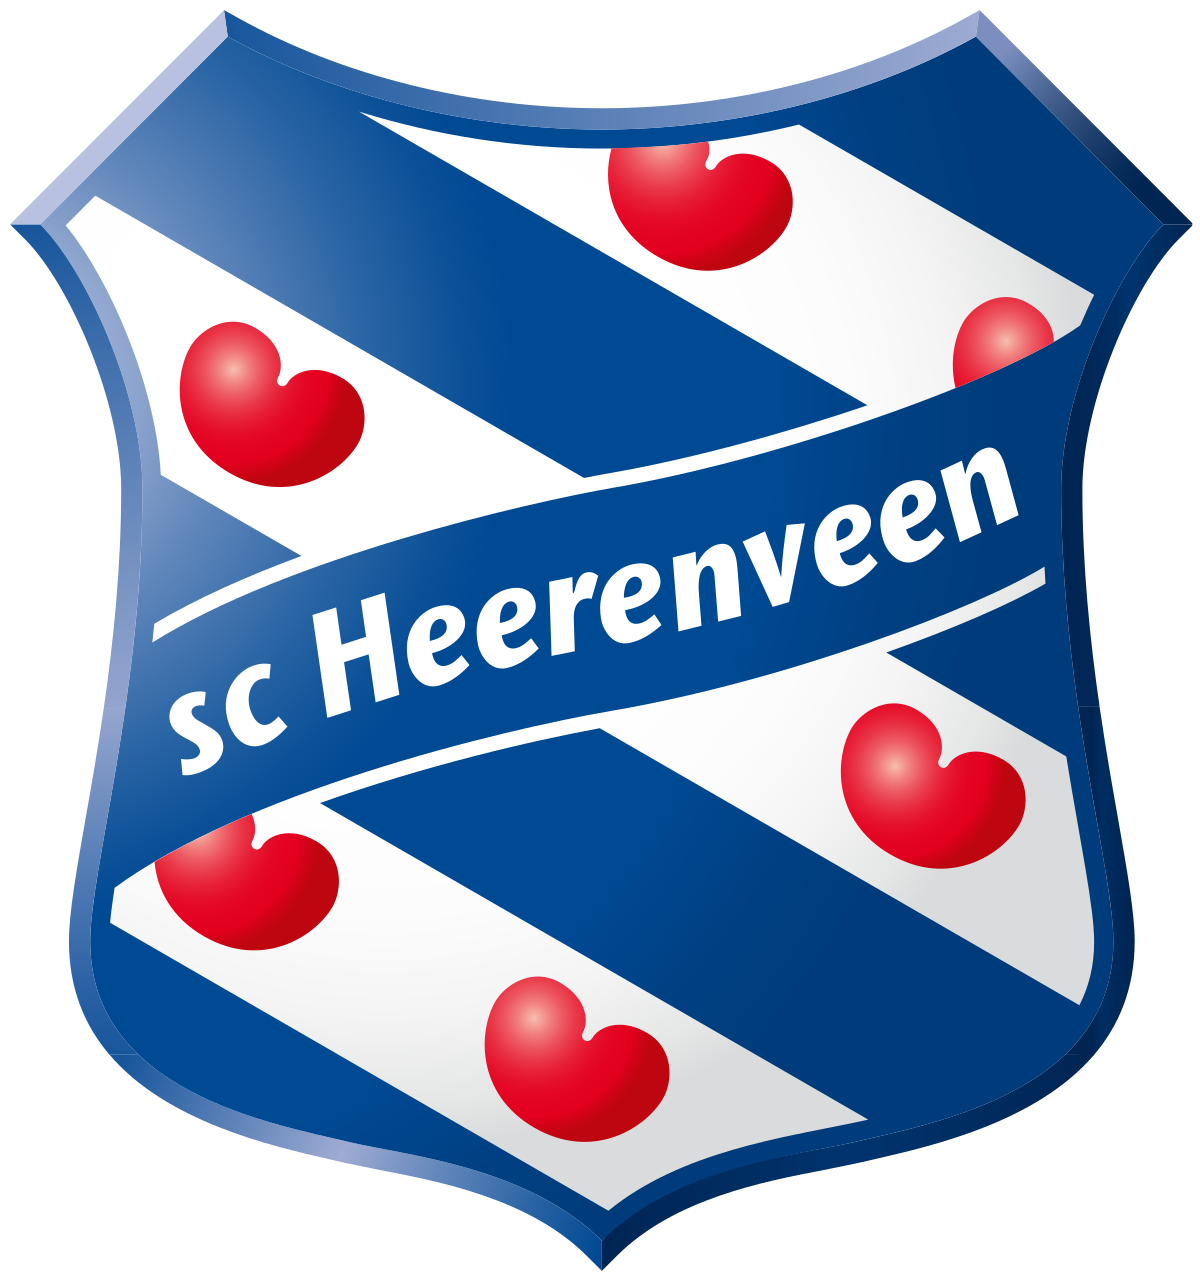 Sc Heerenveen Logo